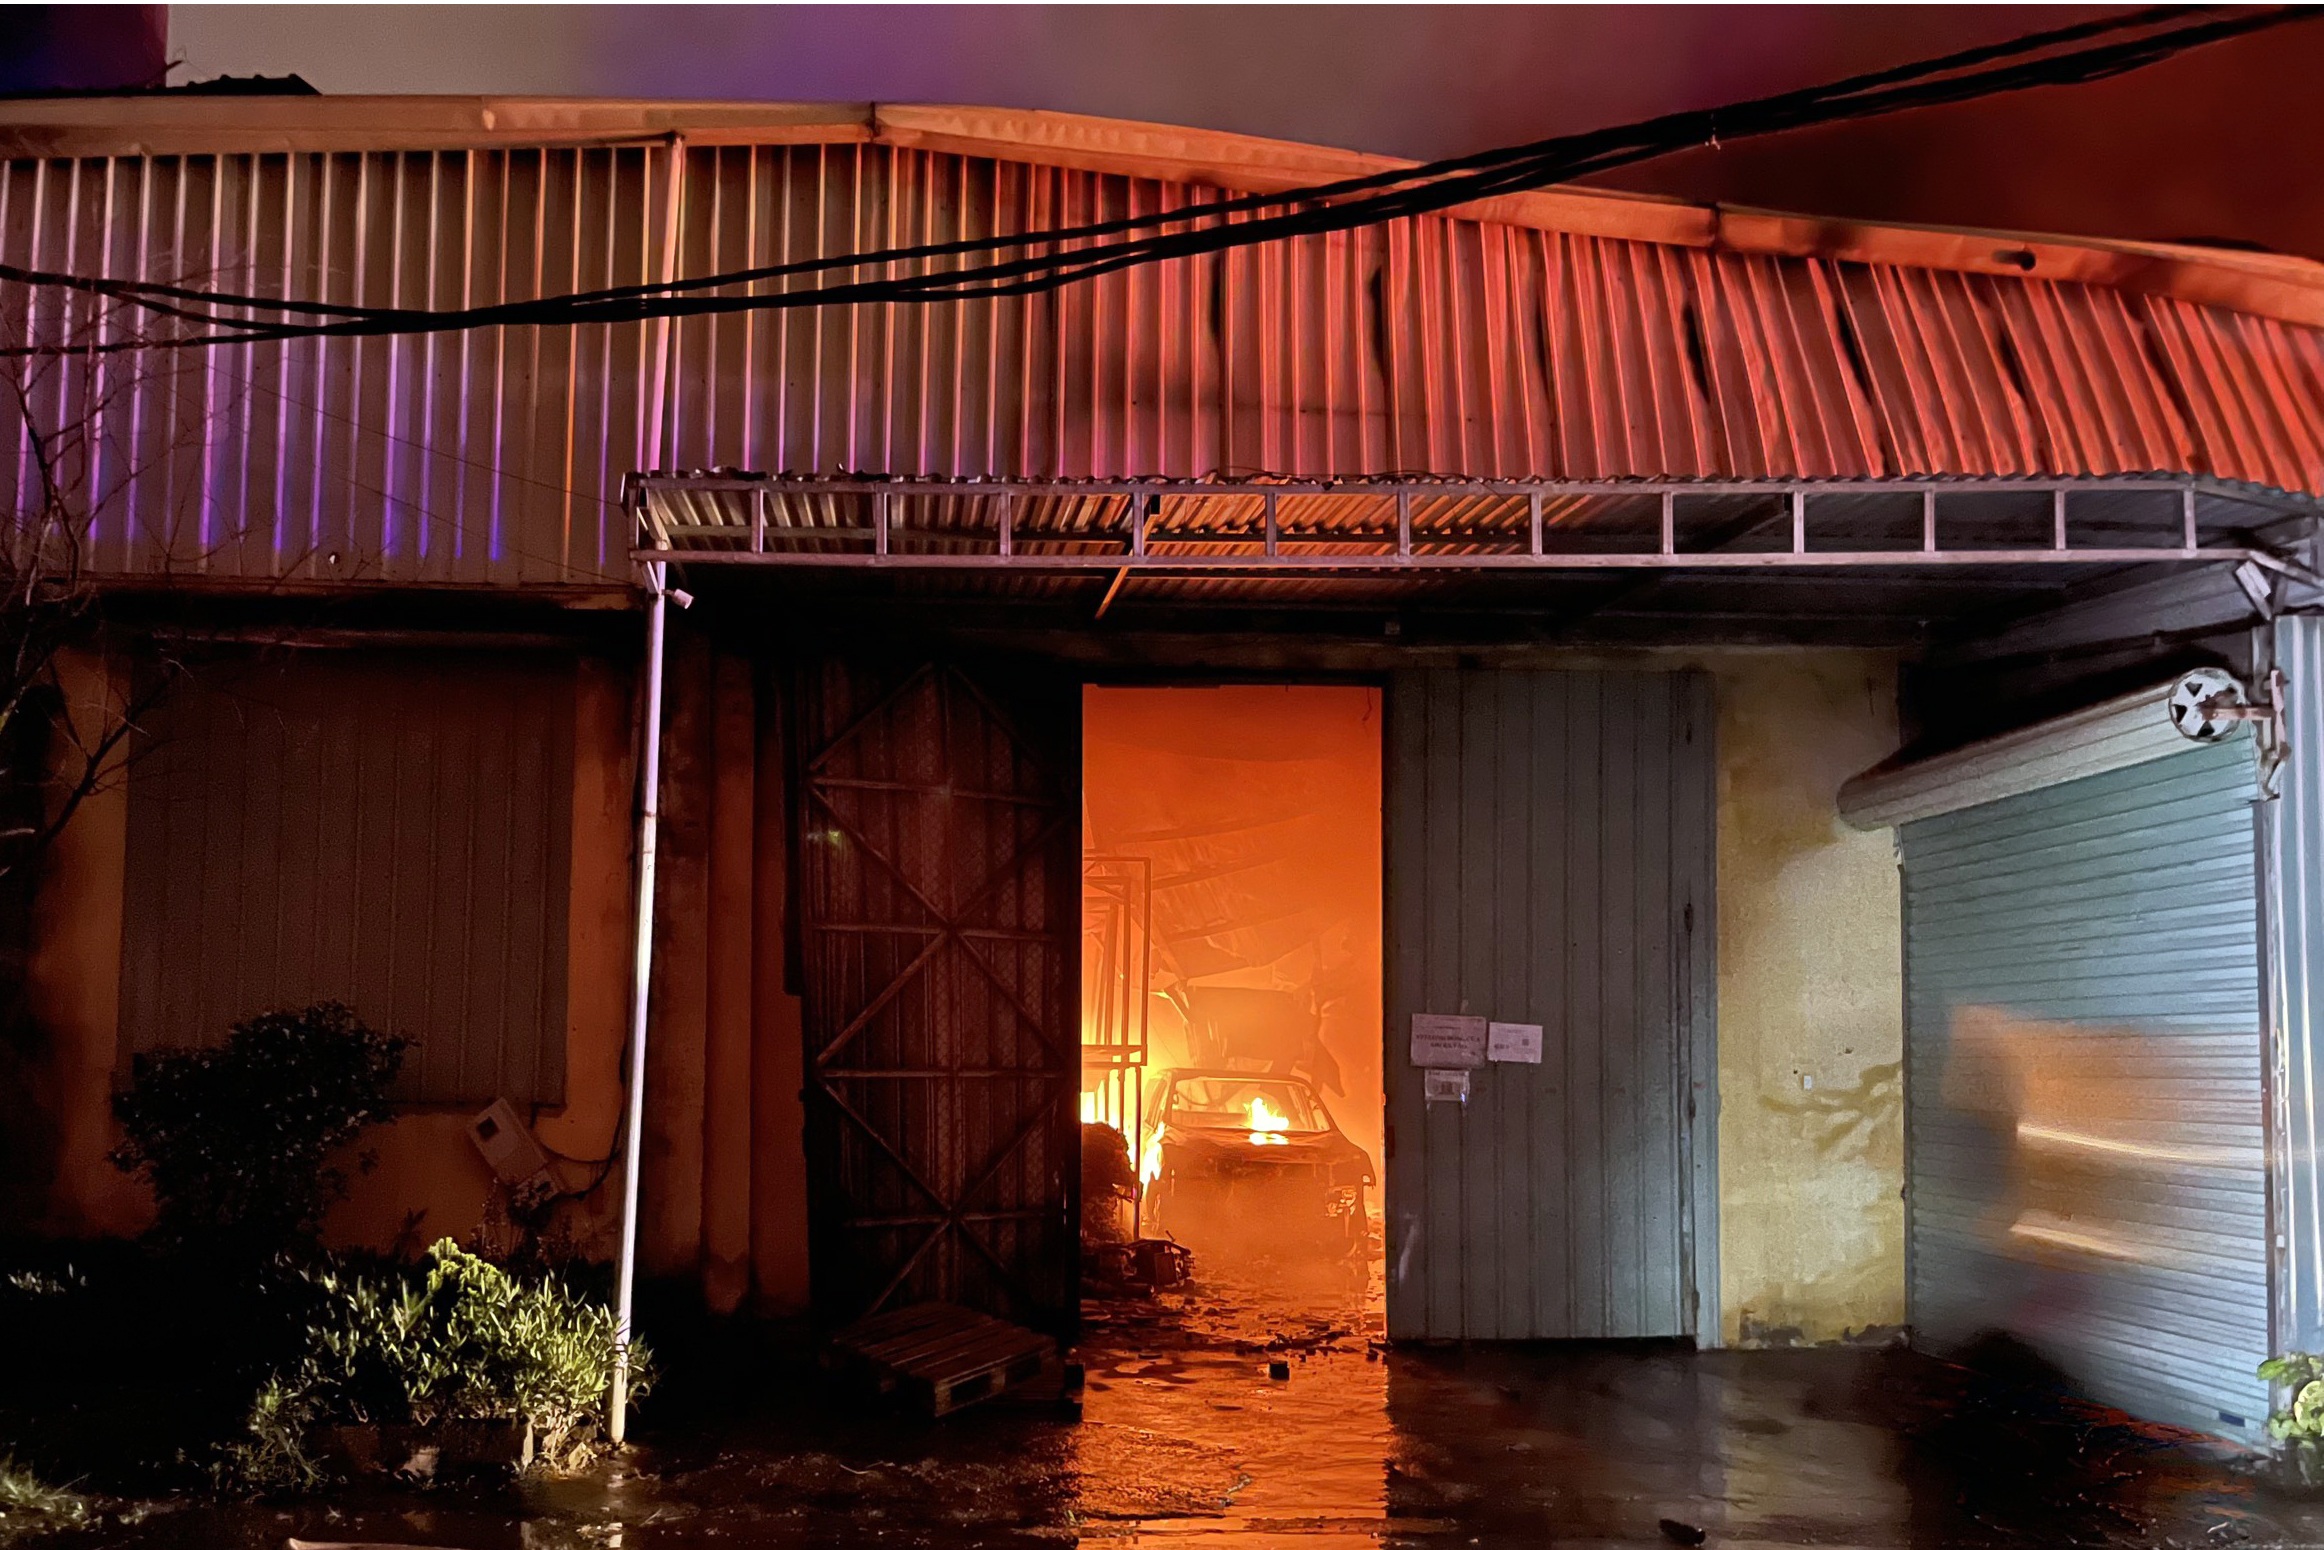 Lửa cháy rừng rực tại kho hàng đã bị đình chỉ hoạt động ở Hà Nội - 1